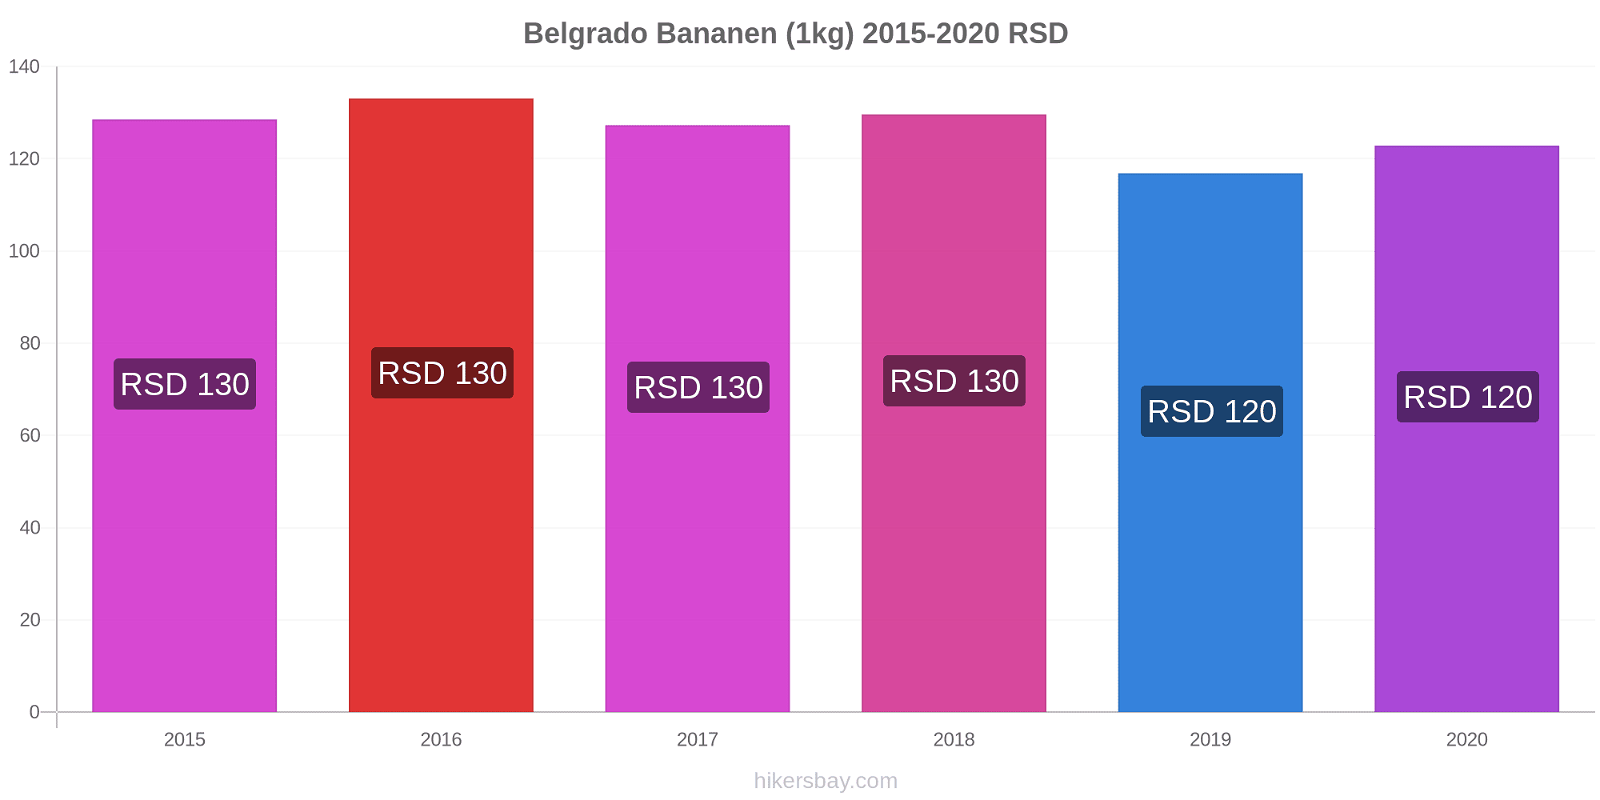 Belgrado prijswijzigingen Banaan (1kg) hikersbay.com